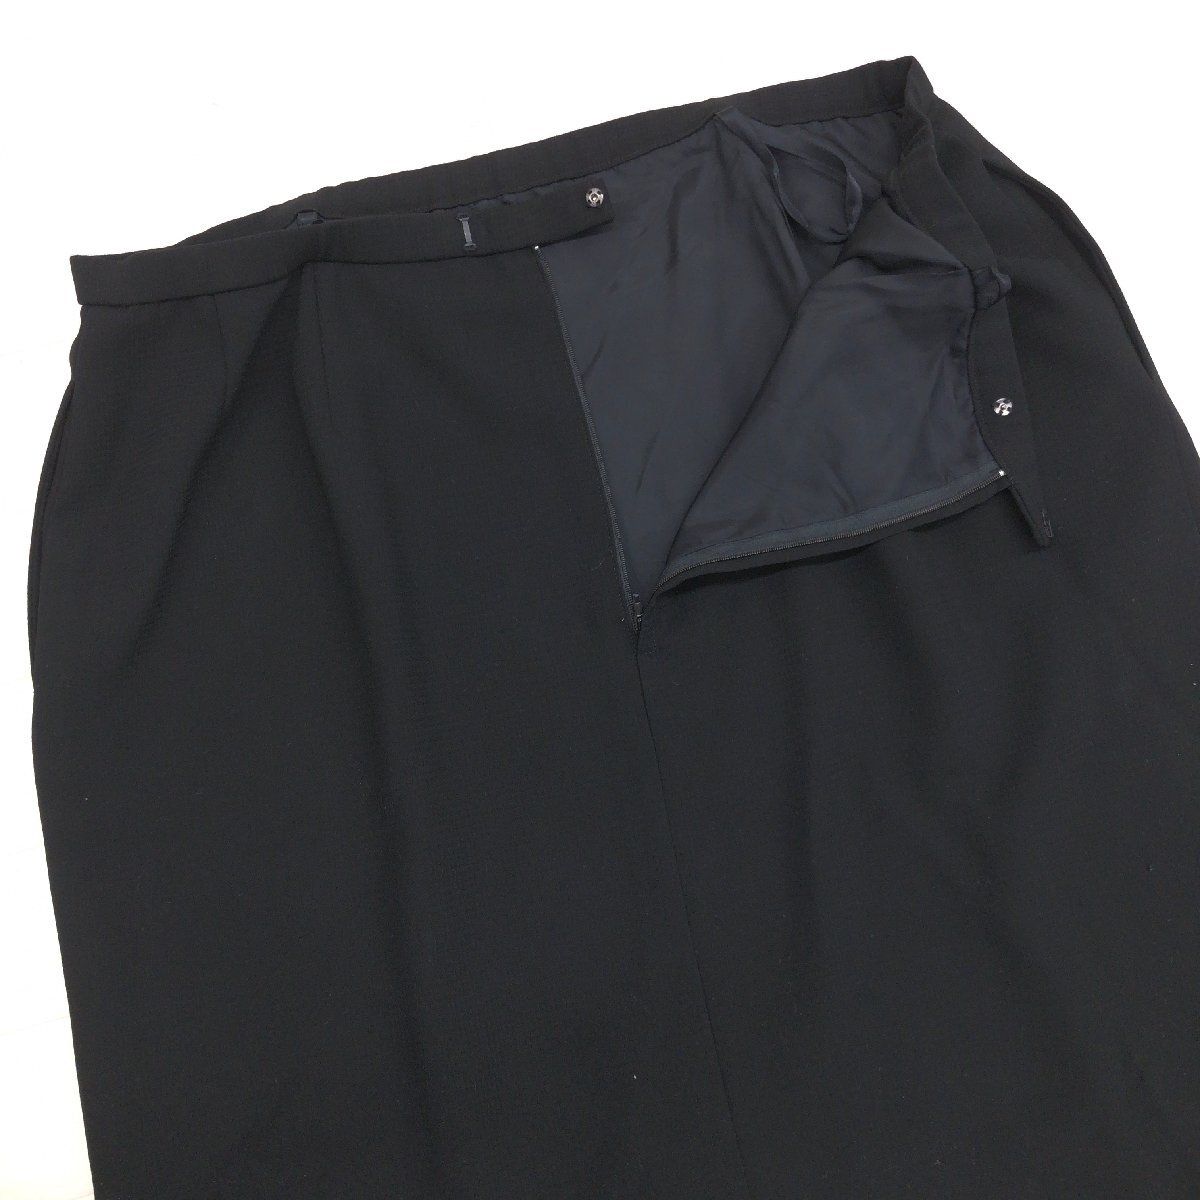 ●LAPINE ラピーヌ 3ピース フォーマルスーツ 上下セットアップ 17(3XL) 黒 ブラック ロングスカート ゆったり 大きいサイズ 4L 日本製_画像7